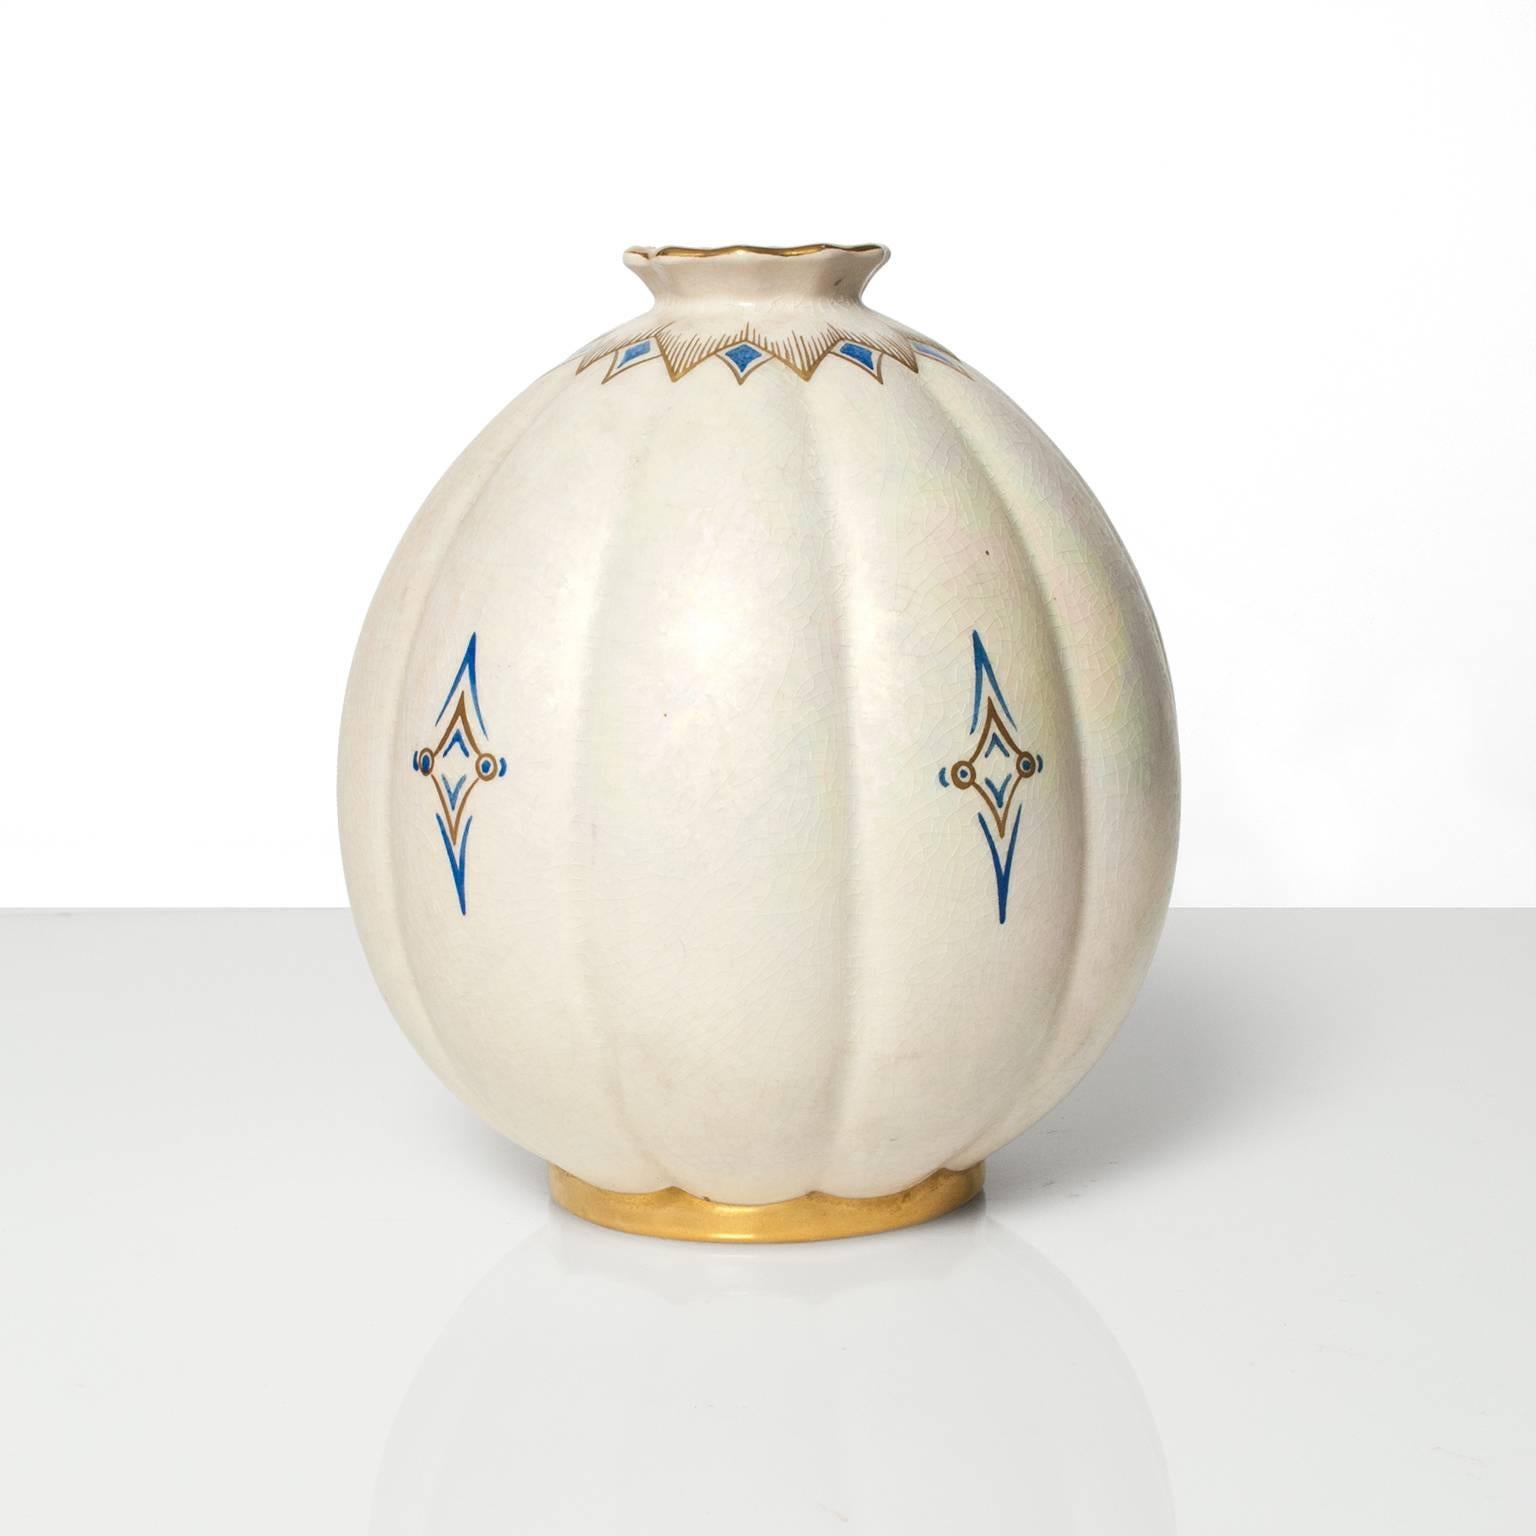 Skandinavische Moderne, schwedische Art Deco Vase aus handdekorierter Keramik in weißer Perlmutglasur mit Details in Gold und Blau, von Gustavsberg. Entworfen und signiert von Josef Ekberg, 1936. Höhe: 9